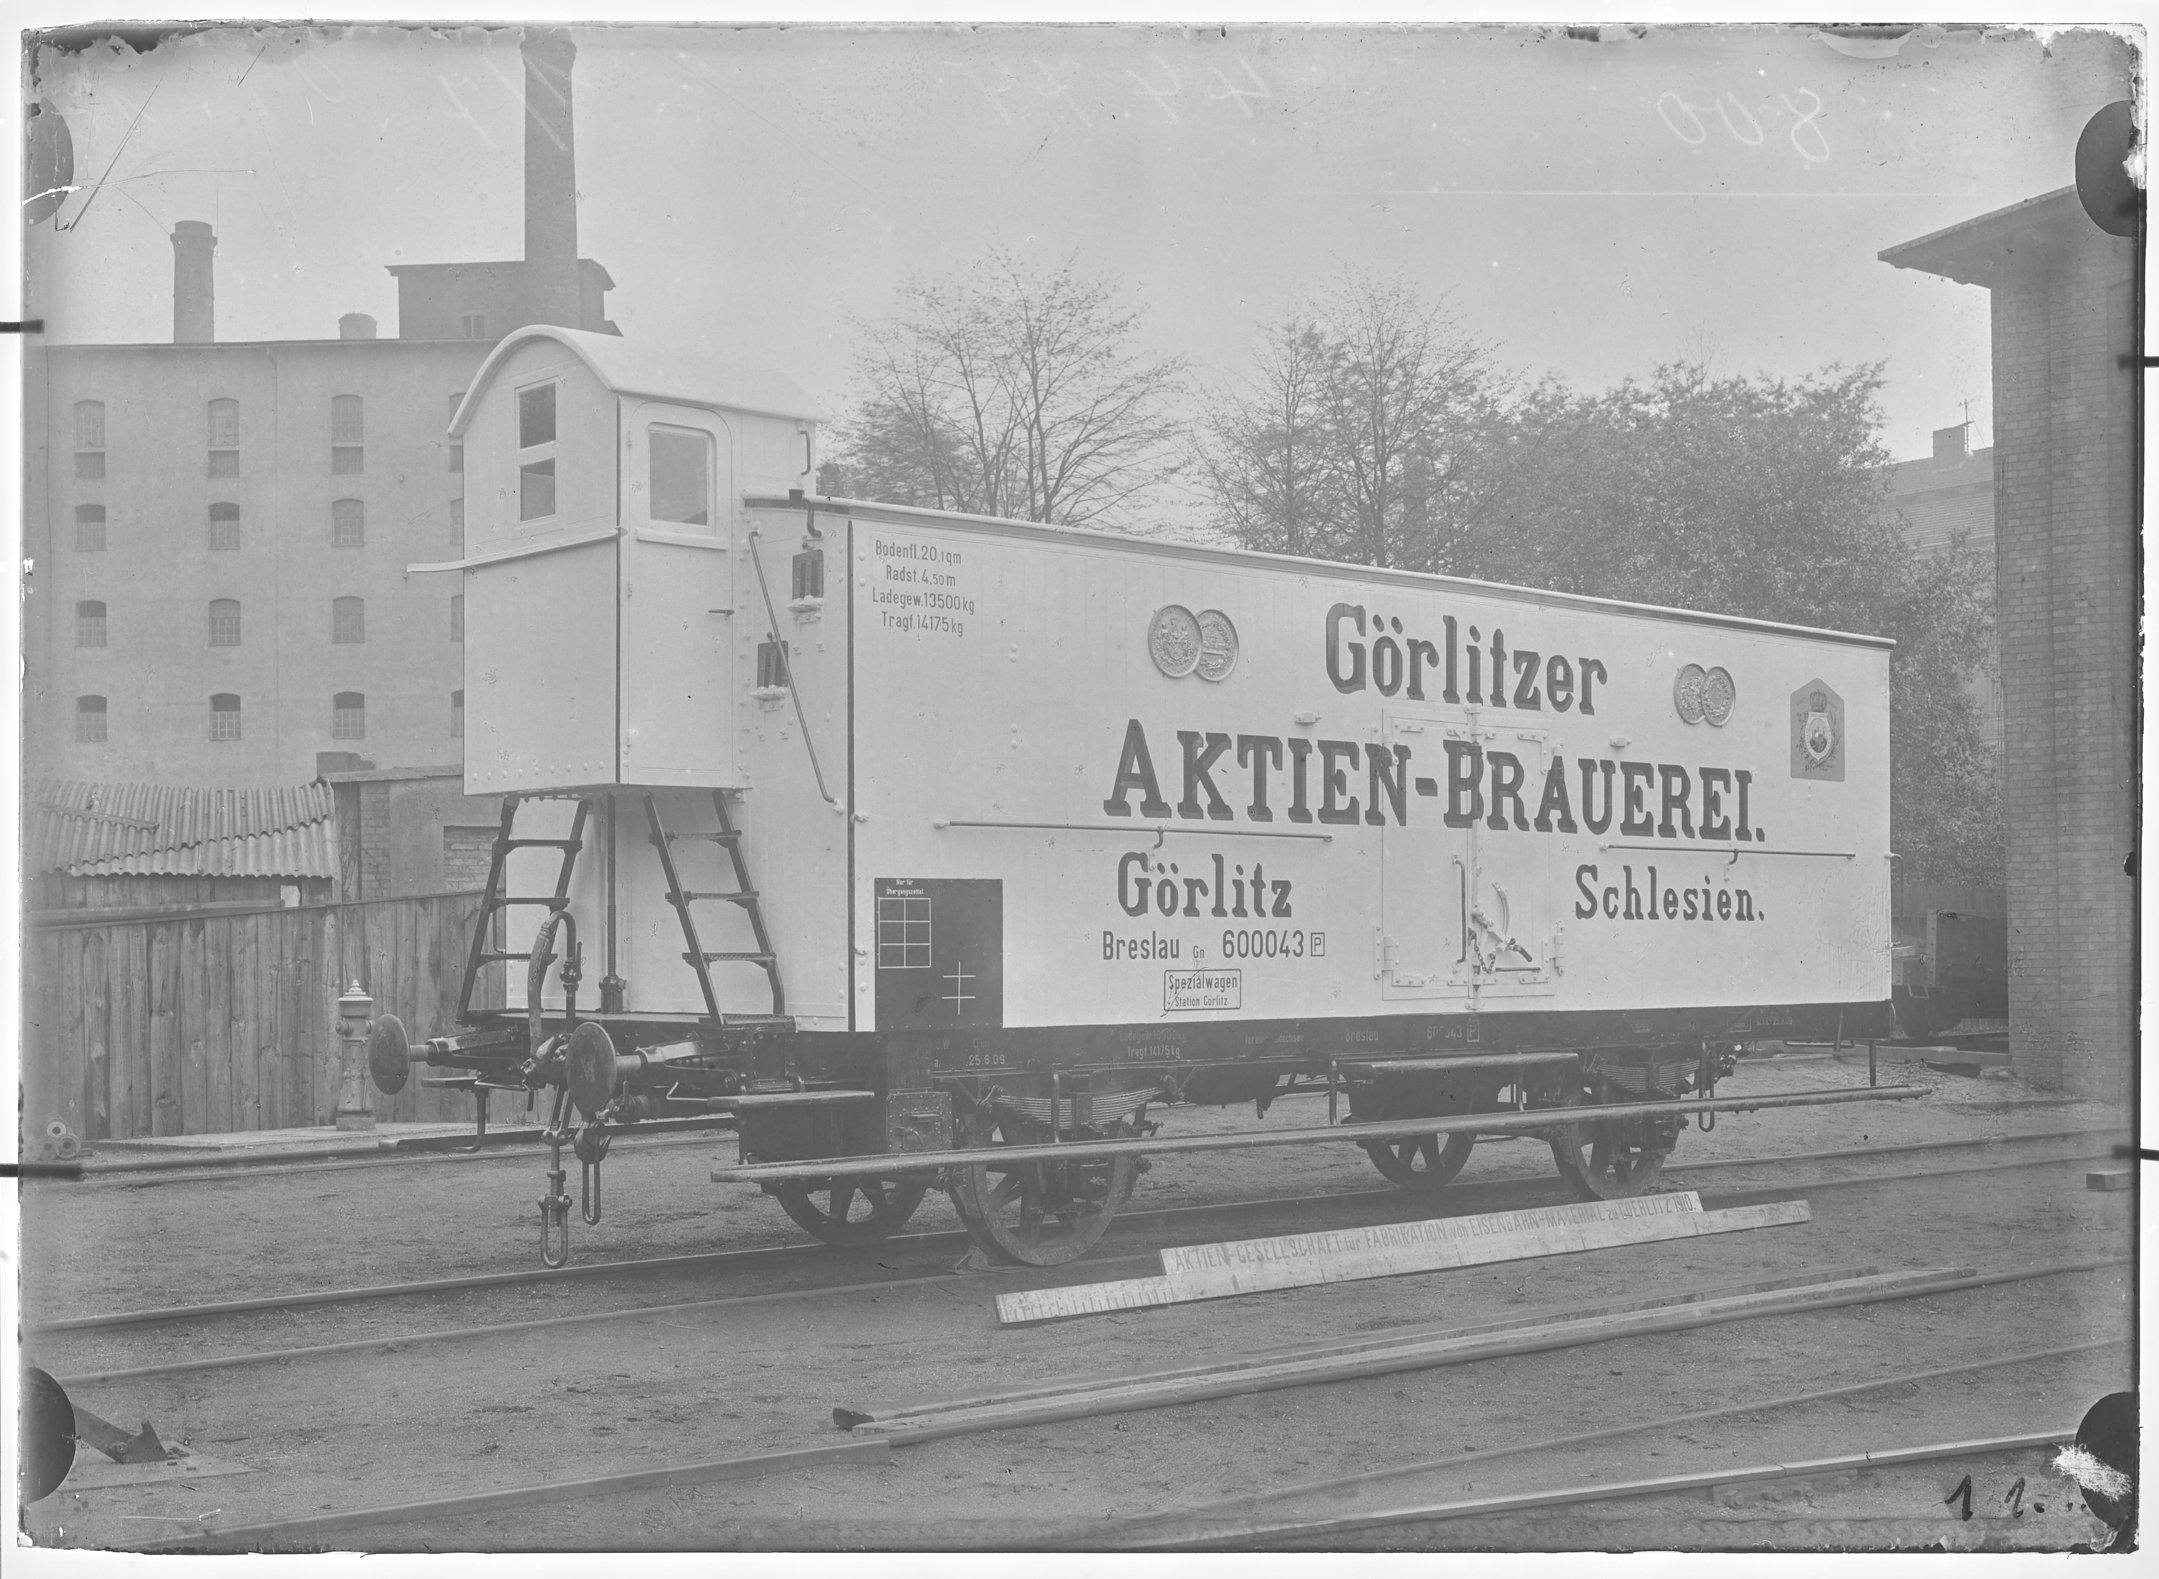 Fotografie: zweiachsiger gedeckter Güterwagen mit Bremserhaus, Gattung GnP (Schrägansicht), Spezialwagen für Biertransport, 1910. Görlitzer Aktien-Bra (Verkehrsmuseum Dresden CC BY-NC-SA)